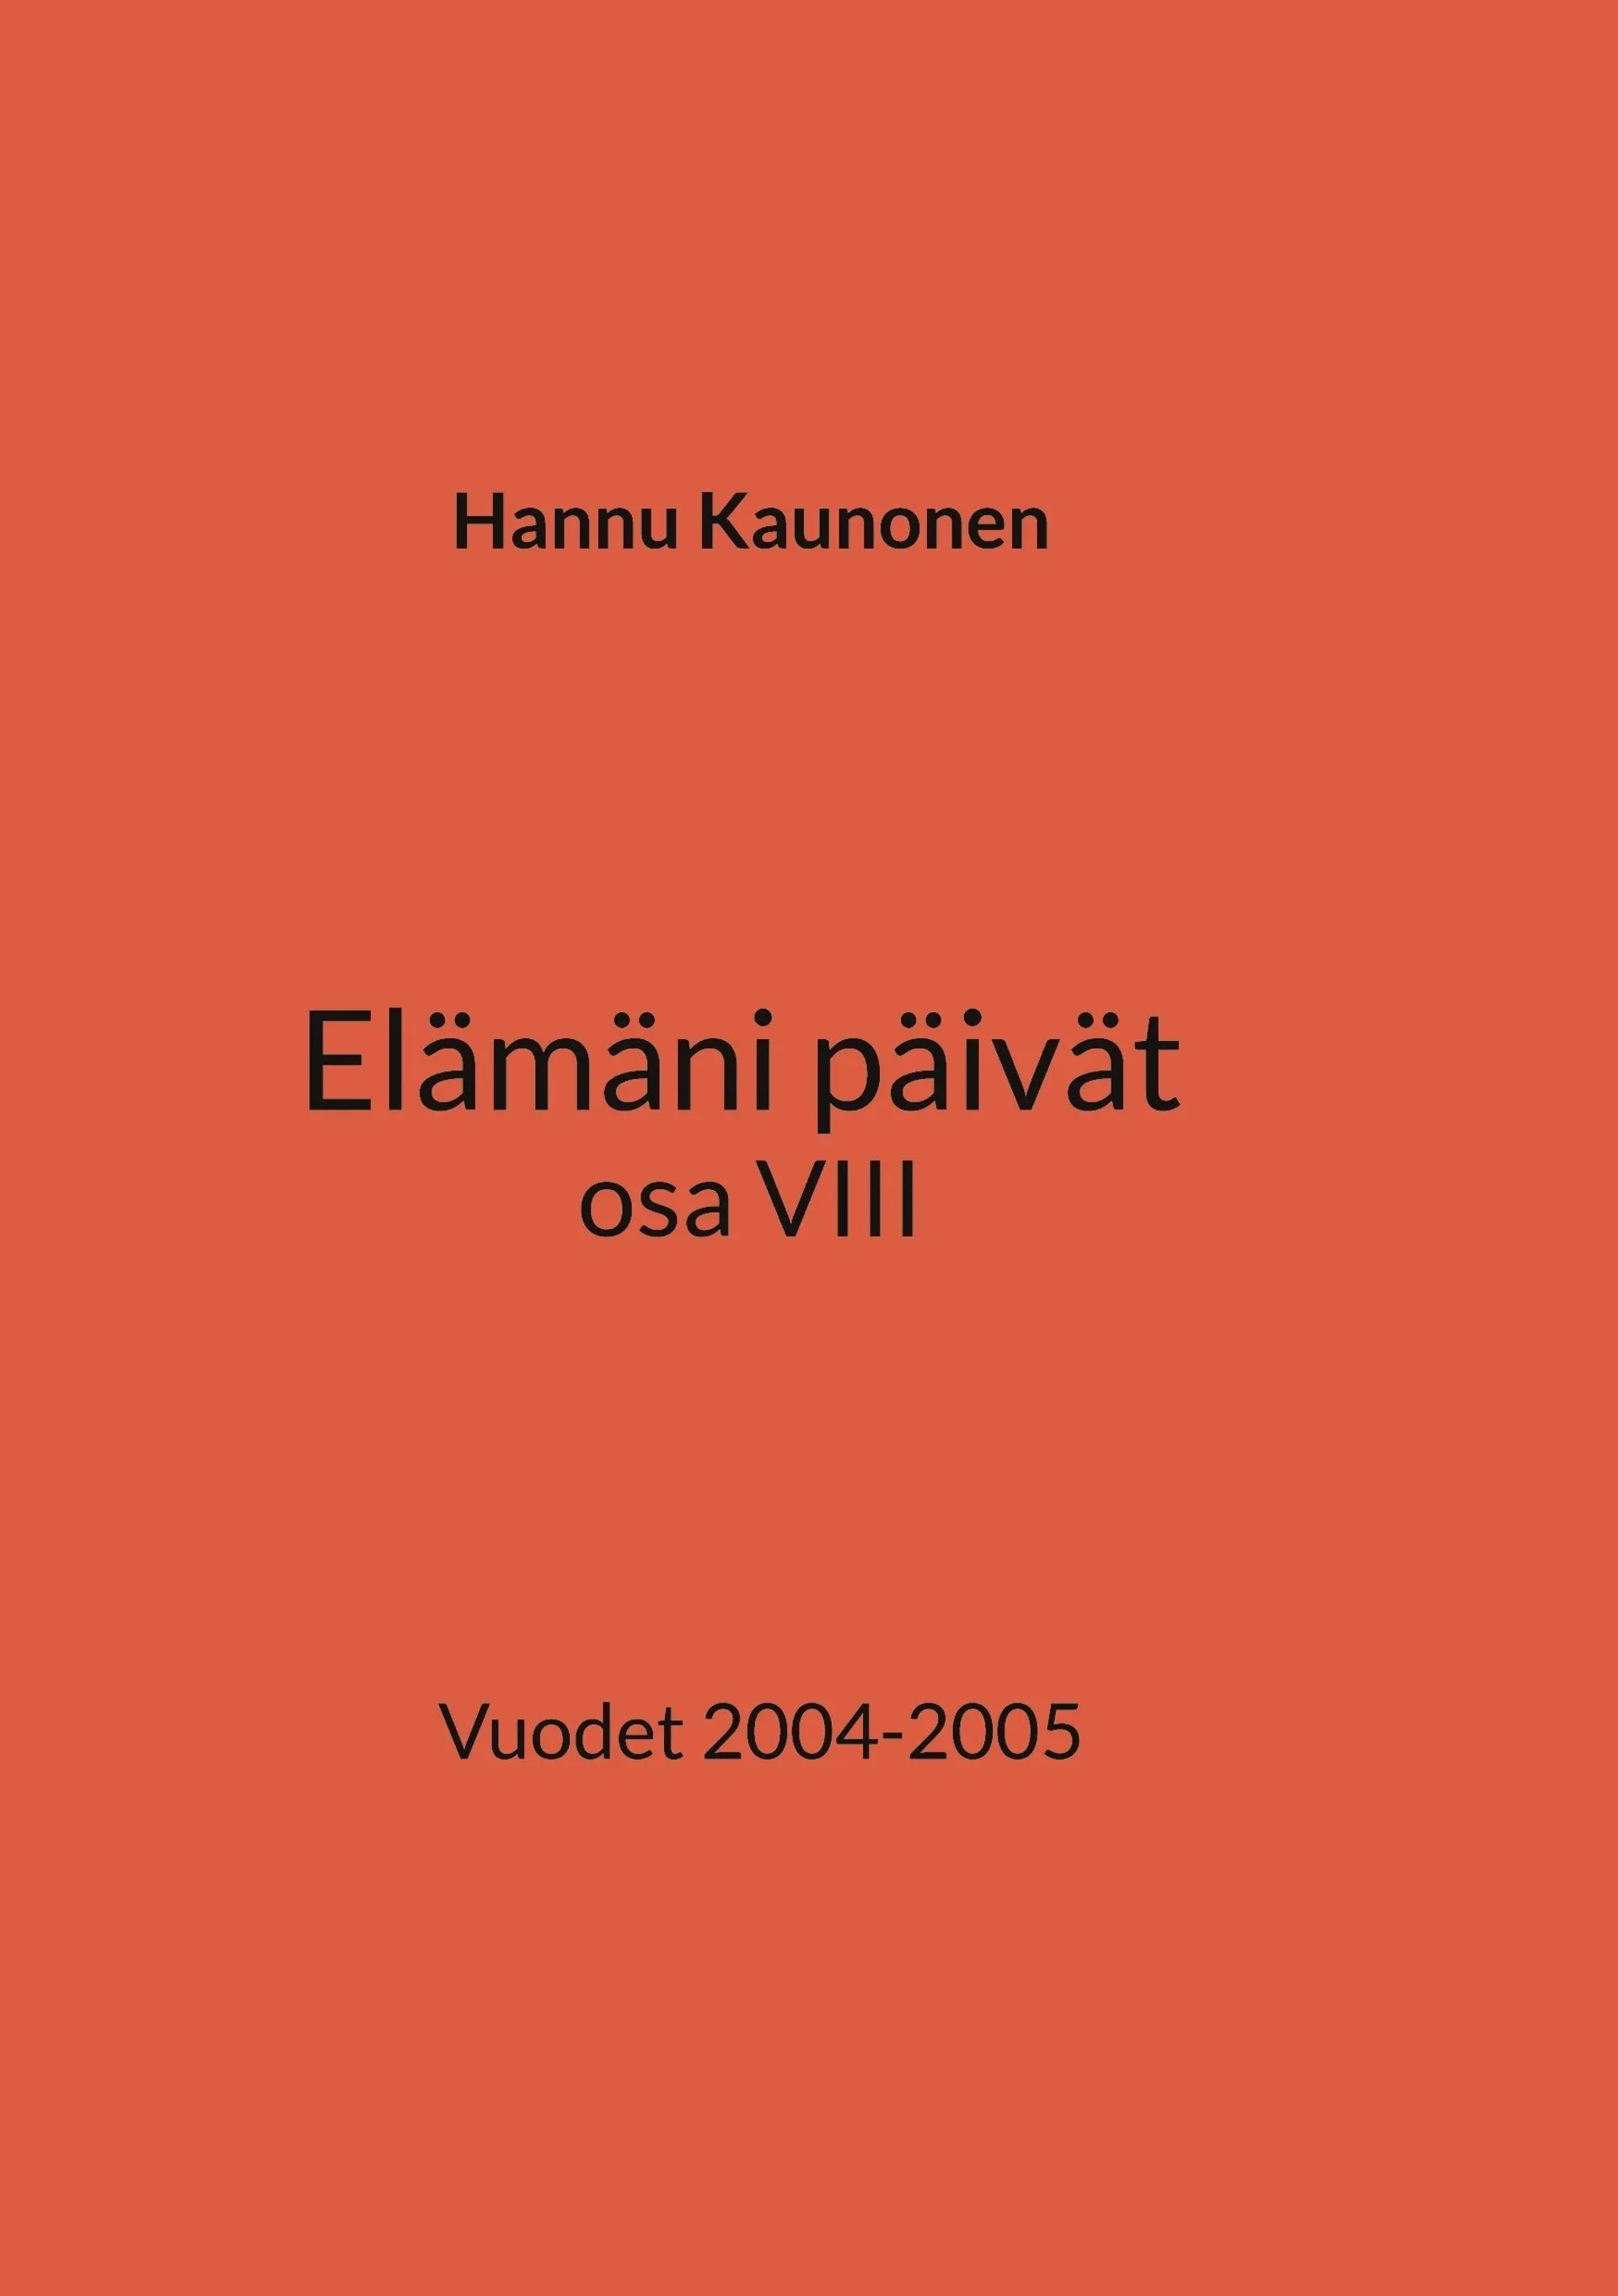 Kaunonen, Elämäni päivät osa VIII - Vuodet 2004-2005